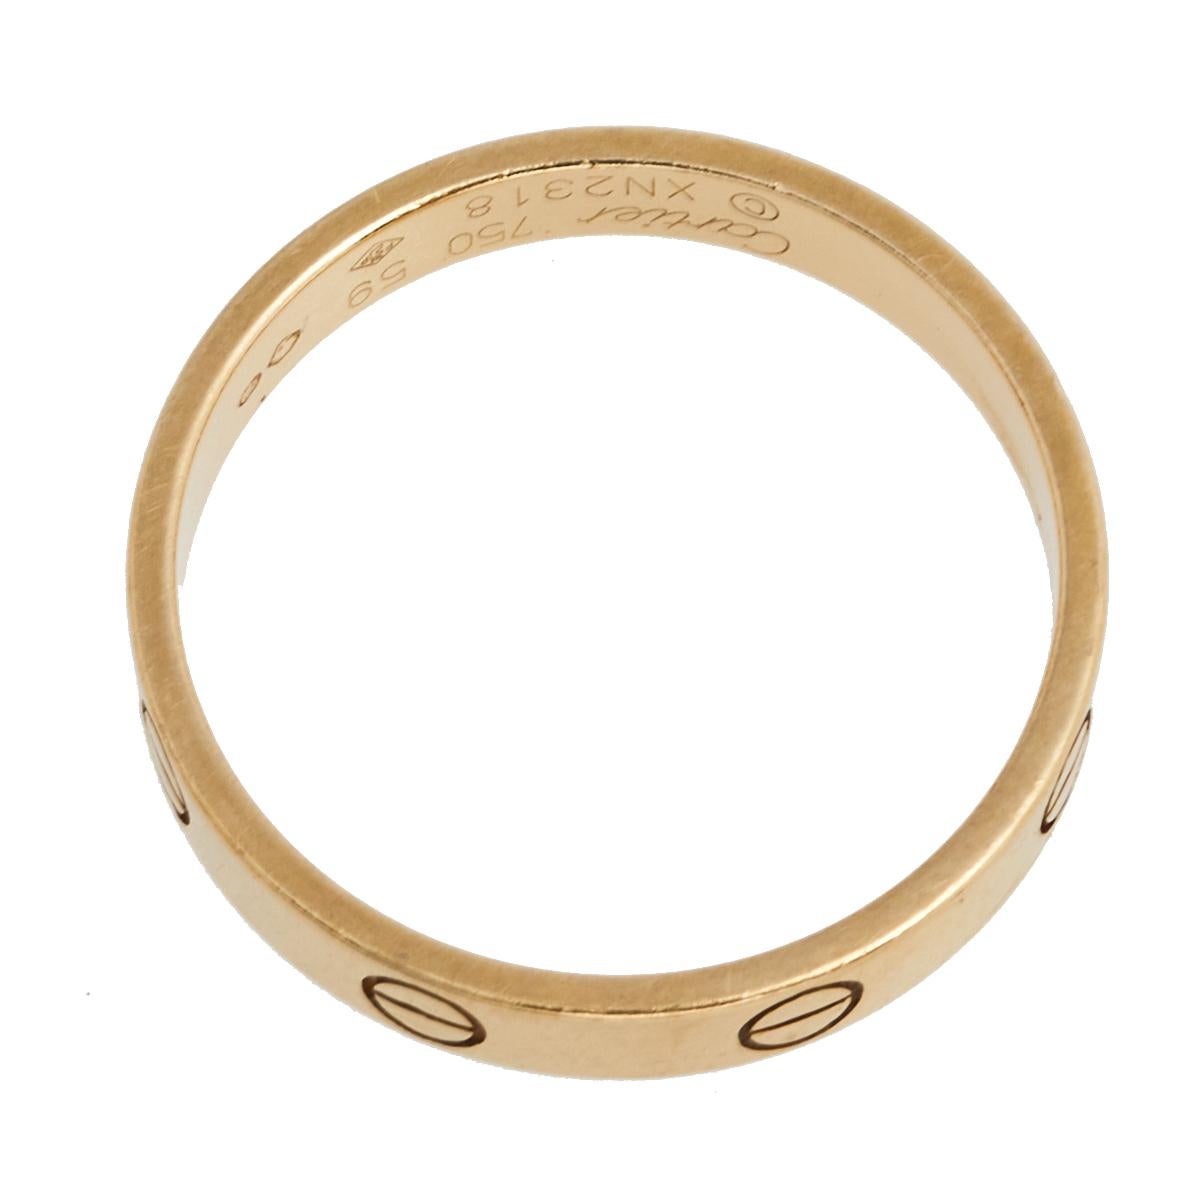 Le bracelet Love de Cartier continue d'être un choix privilégié lorsqu'il s'agit de choisir une bague de mariage ou de fiançailles, voire d'enrichir sa collection. Version annulaire du bracelet Love des années 1970, cette création annonce l'idée